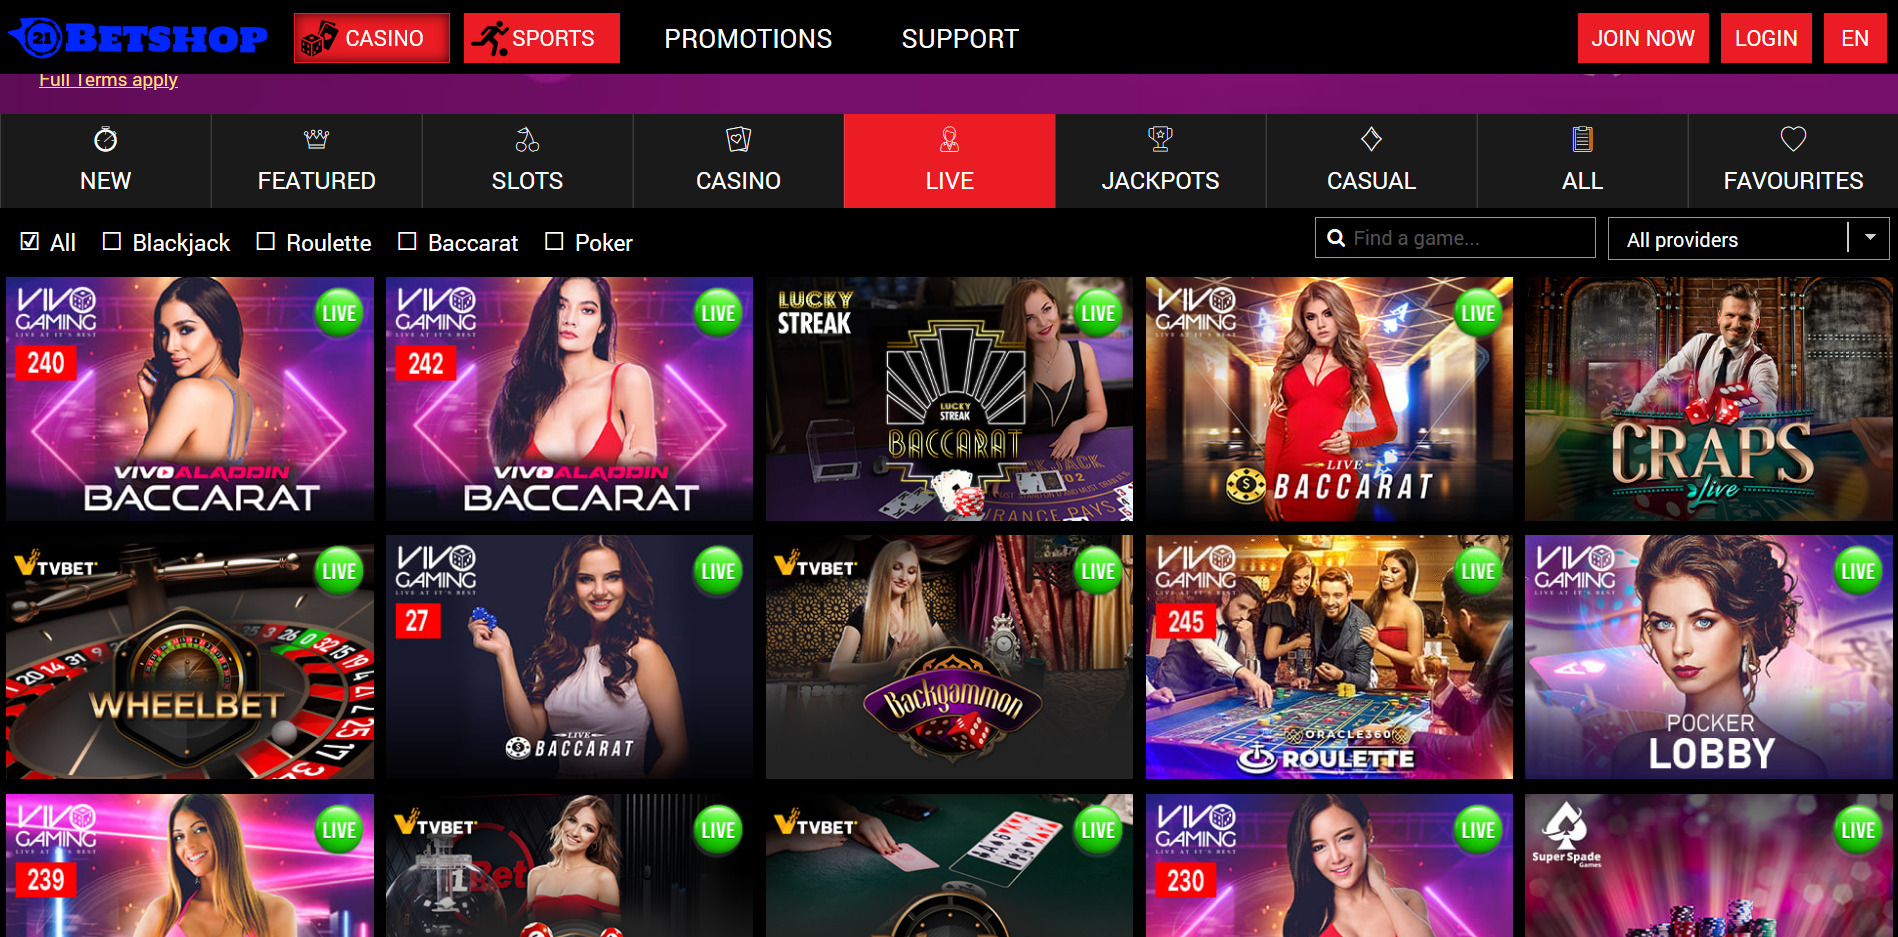 21BetShop Casino Live Dealer Games